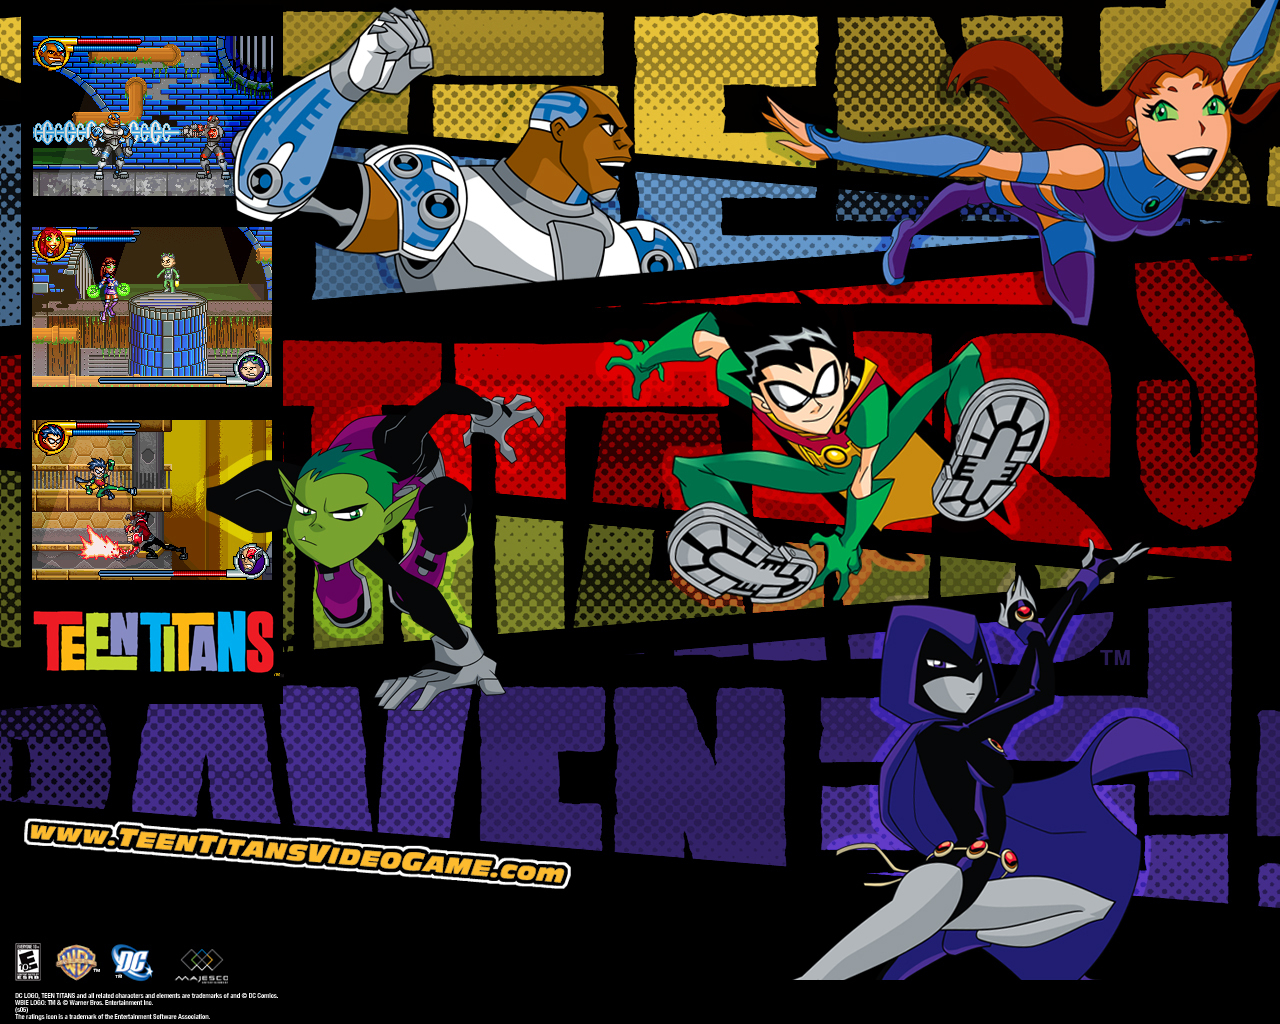 HD Wallpaper Teen Titans Raven X Kb Jpeg